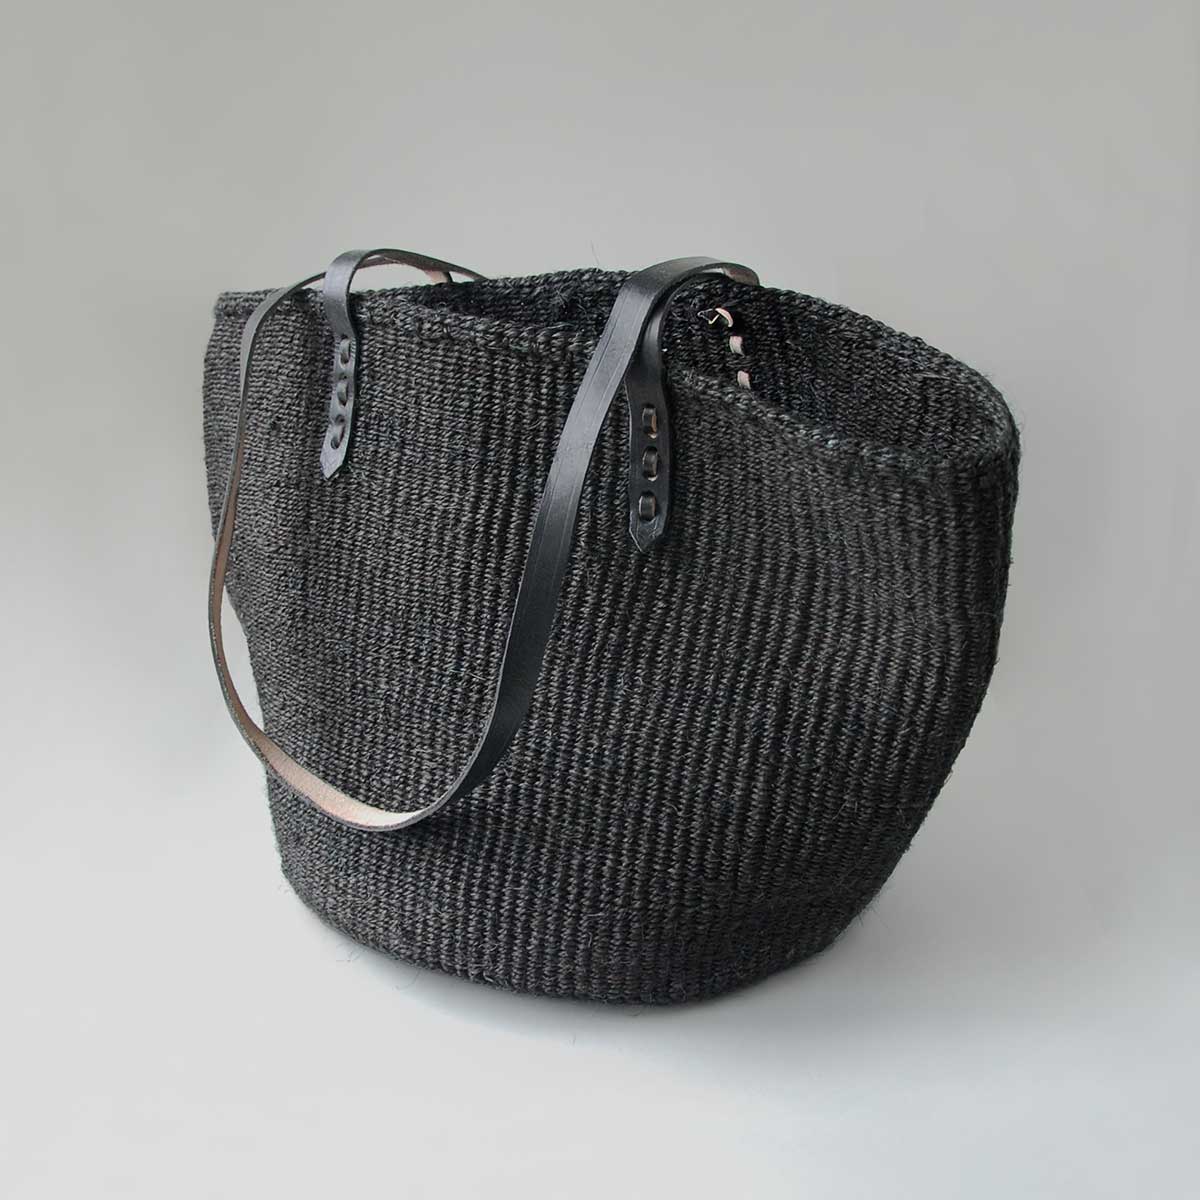 Sisal Bag/ Kiondoo Bag/Kiondo Everyday Handwoven Sisal Bag - Yahoo Shopping